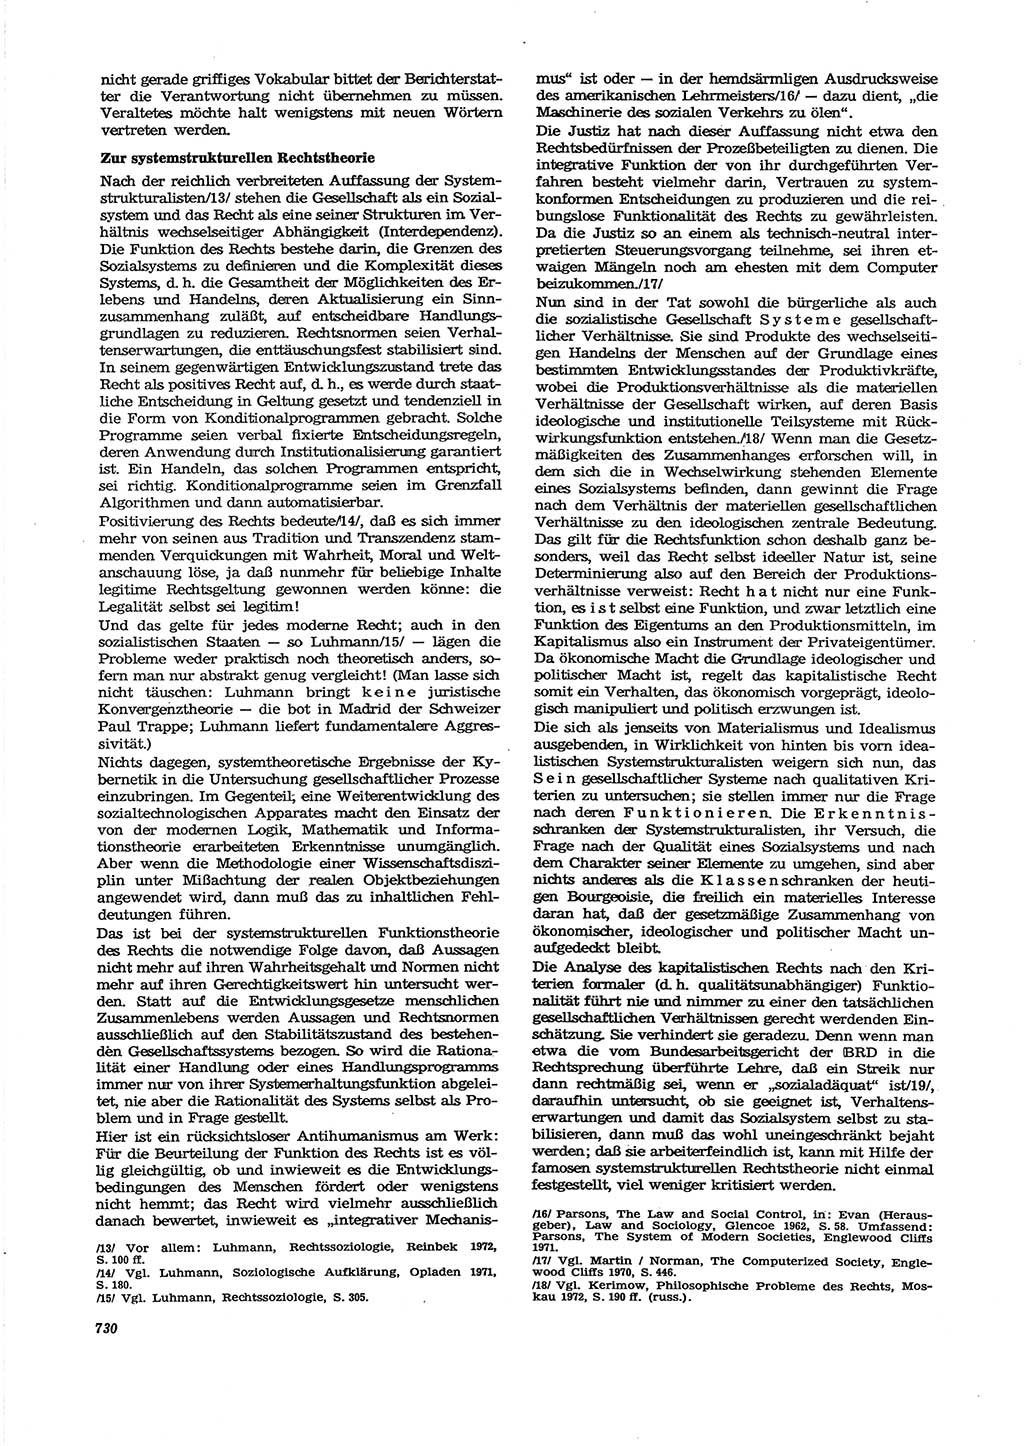 Neue Justiz (NJ), Zeitschrift für Recht und Rechtswissenschaft [Deutsche Demokratische Republik (DDR)], 27. Jahrgang 1973, Seite 730 (NJ DDR 1973, S. 730)